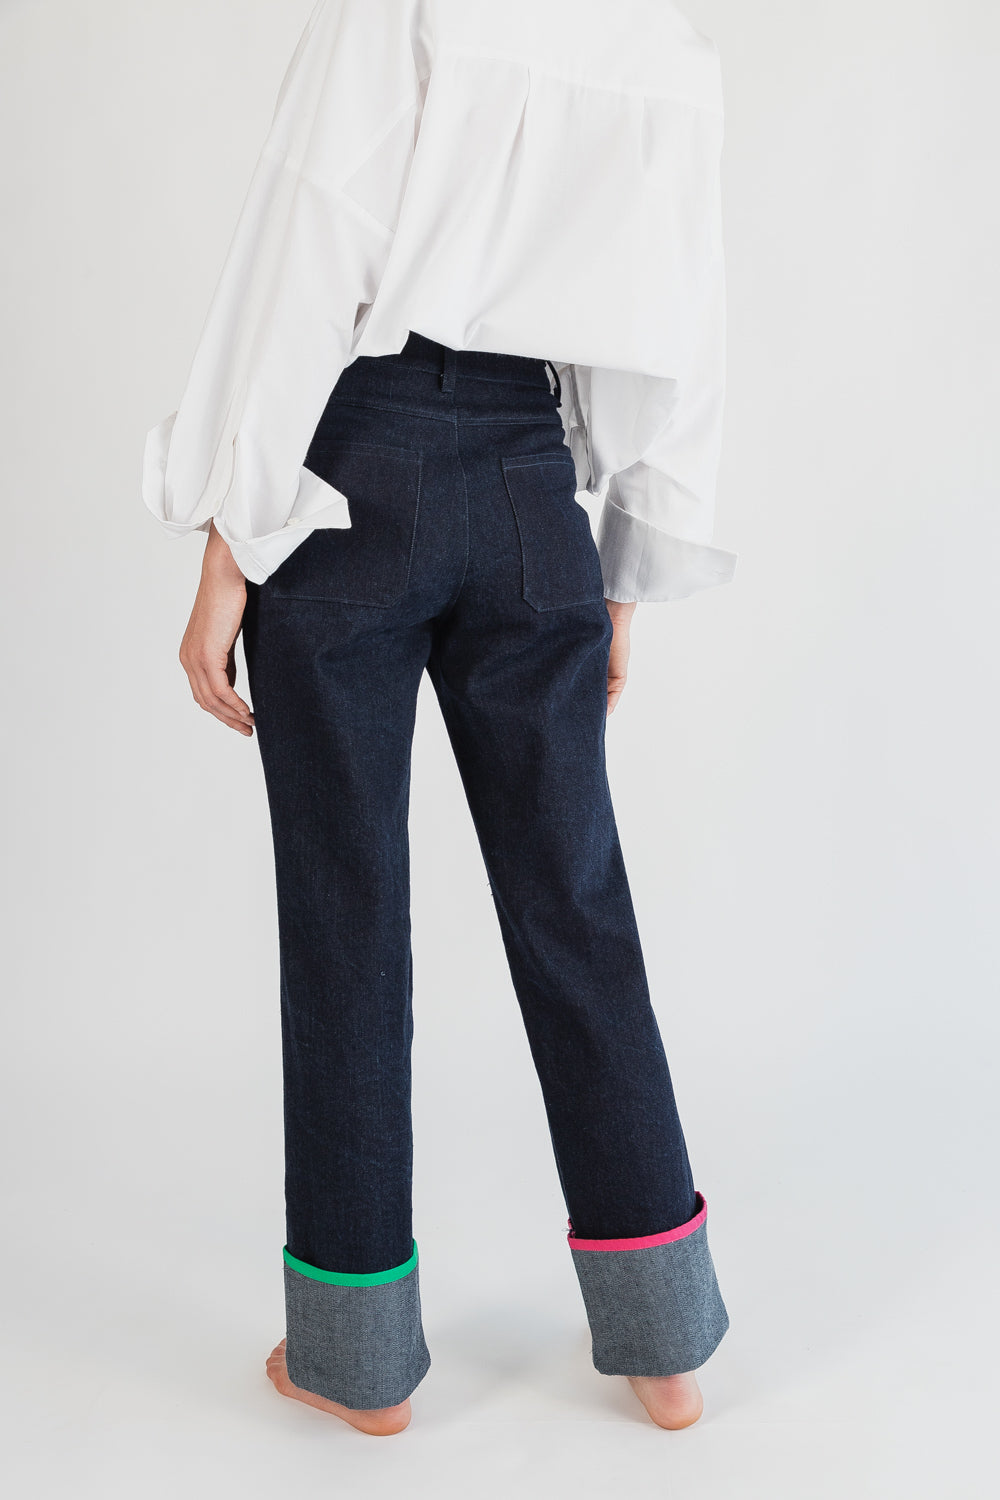 Un par de jeans cómodos y duraderos. moda sustentable Hecho en méxico 